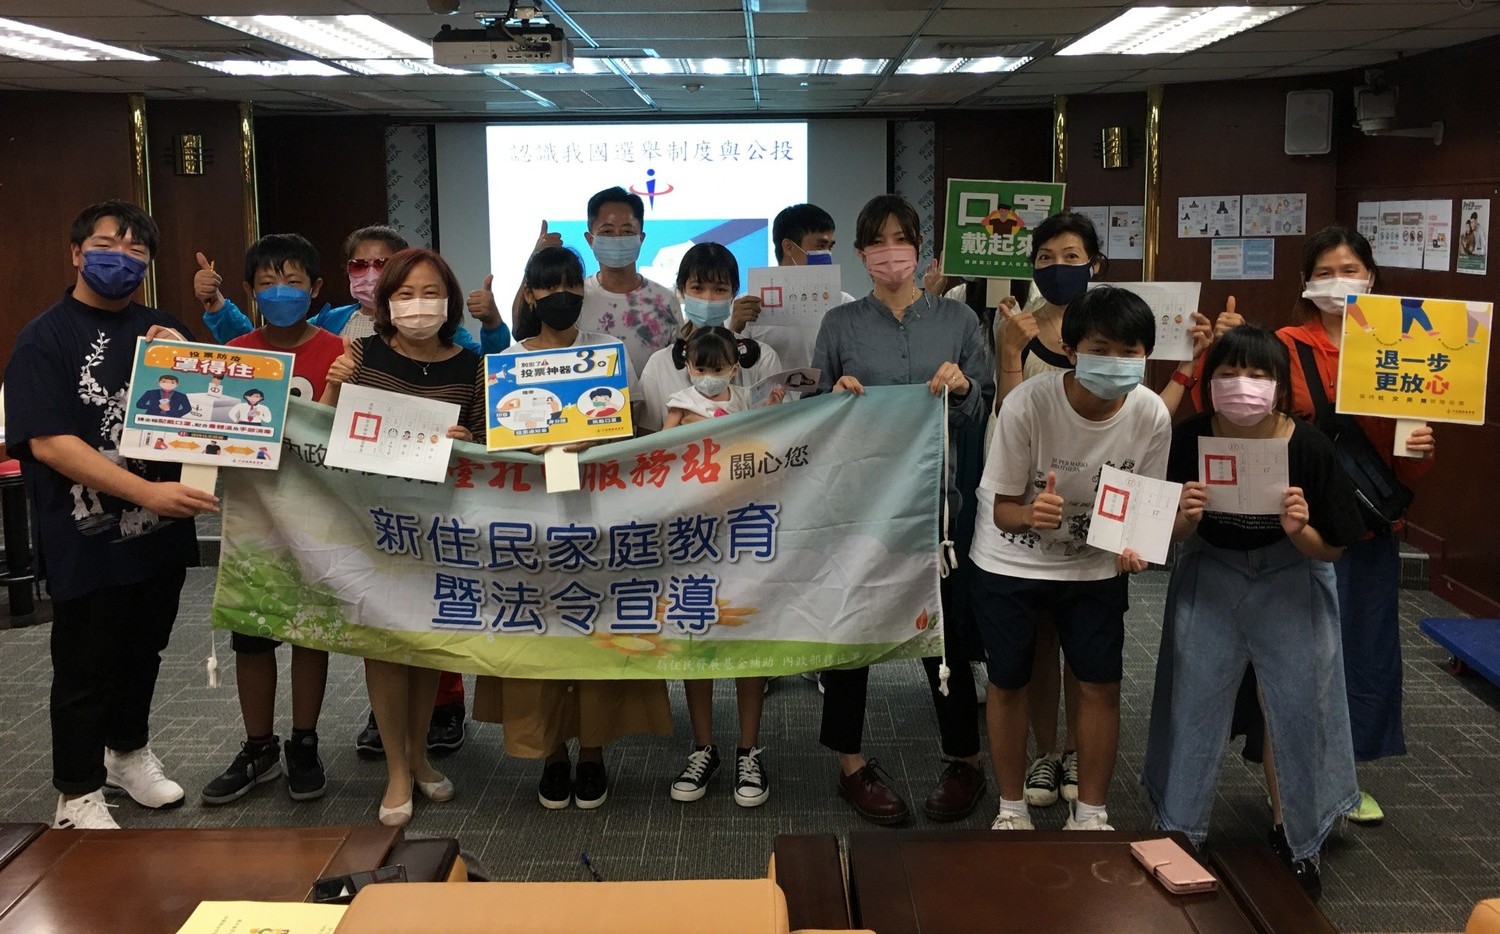 新住民子女看台灣公投 分享母國的投票文化 | 政治 | 新頭殼 Newt